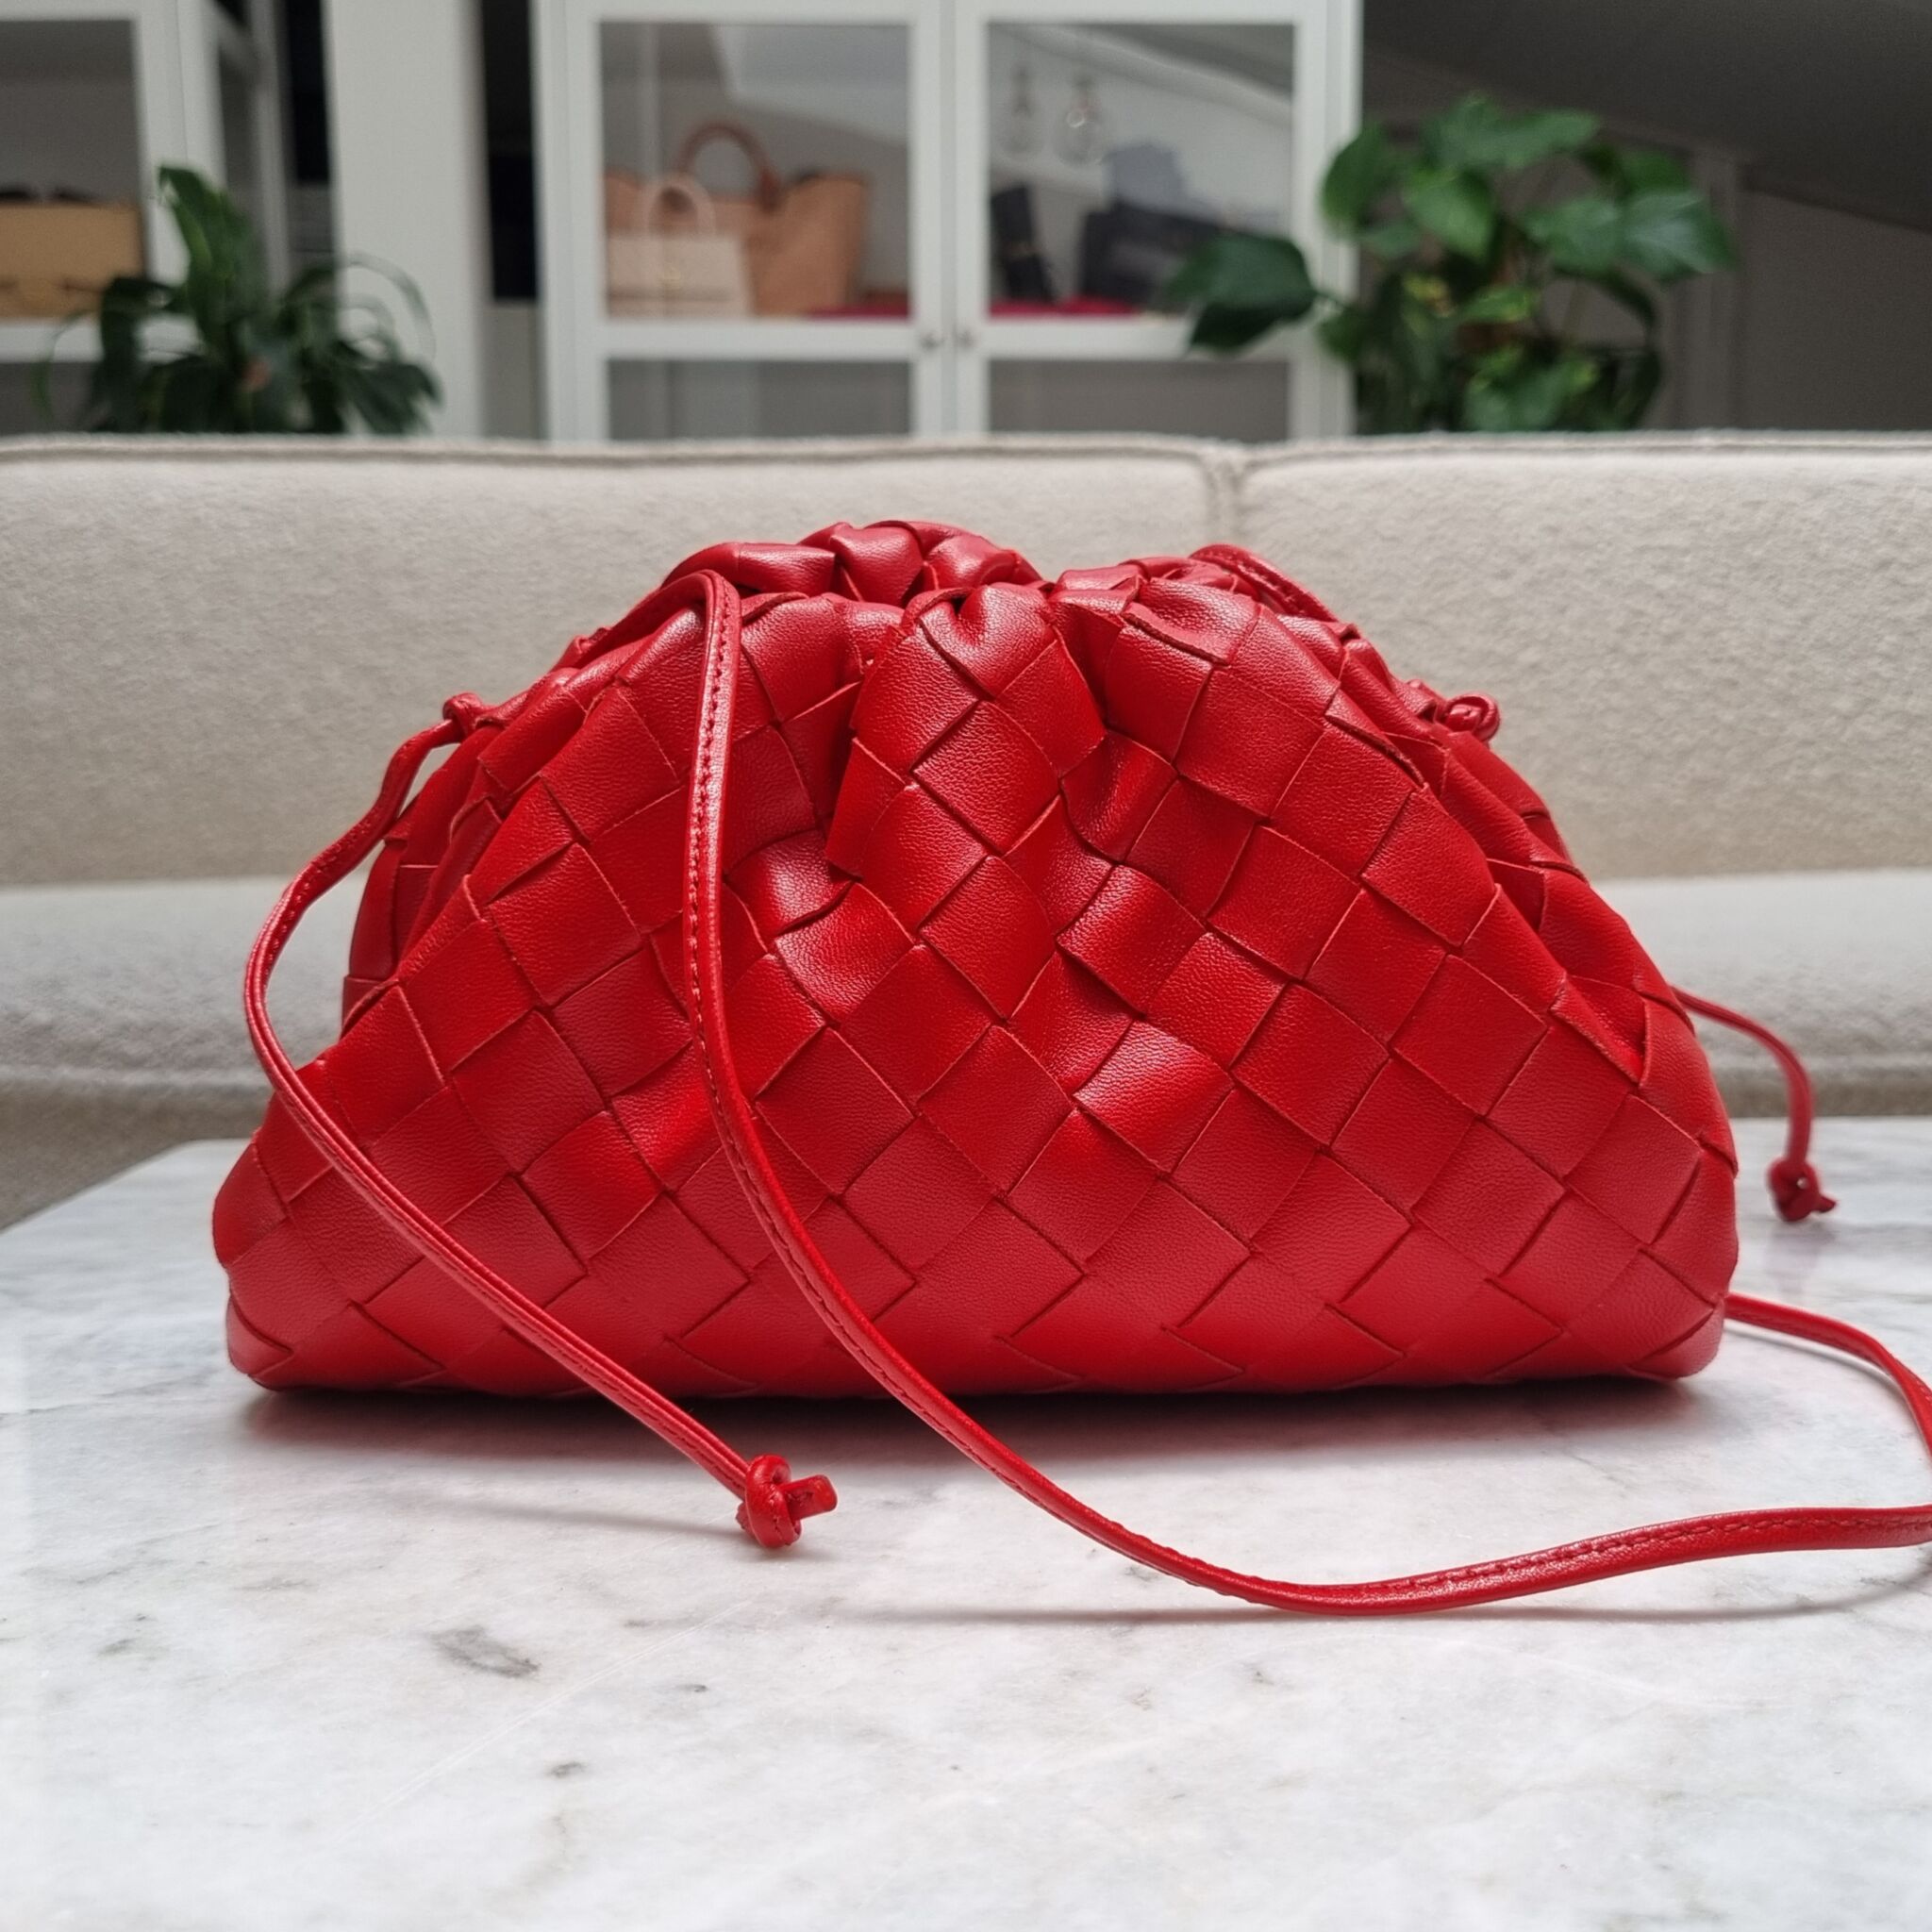 Mini pouch intrecciato leather pouch - Bottega Veneta - Women | Luisaviaroma